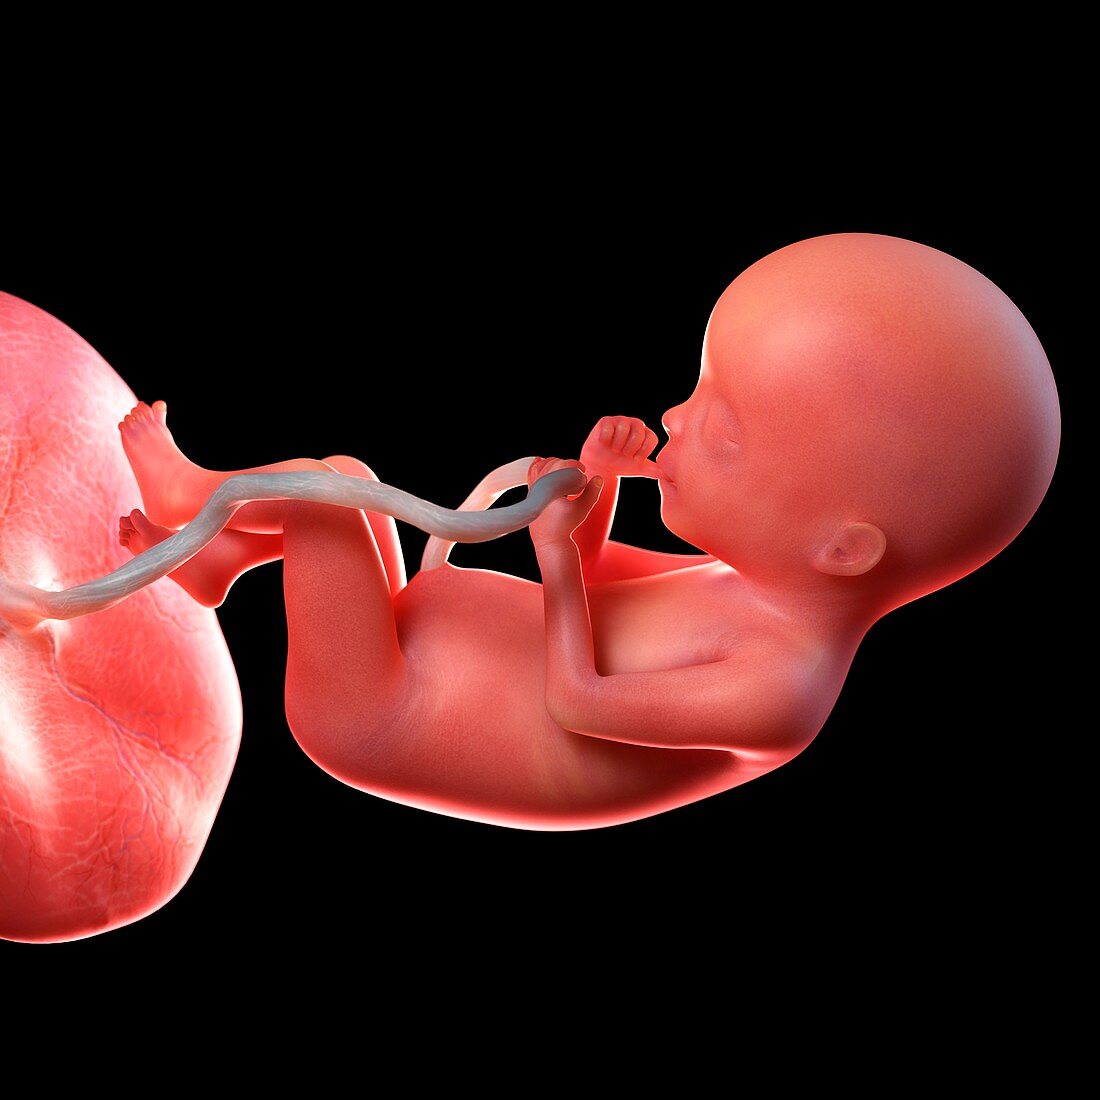 Human foetus age 20 weeks, illustration